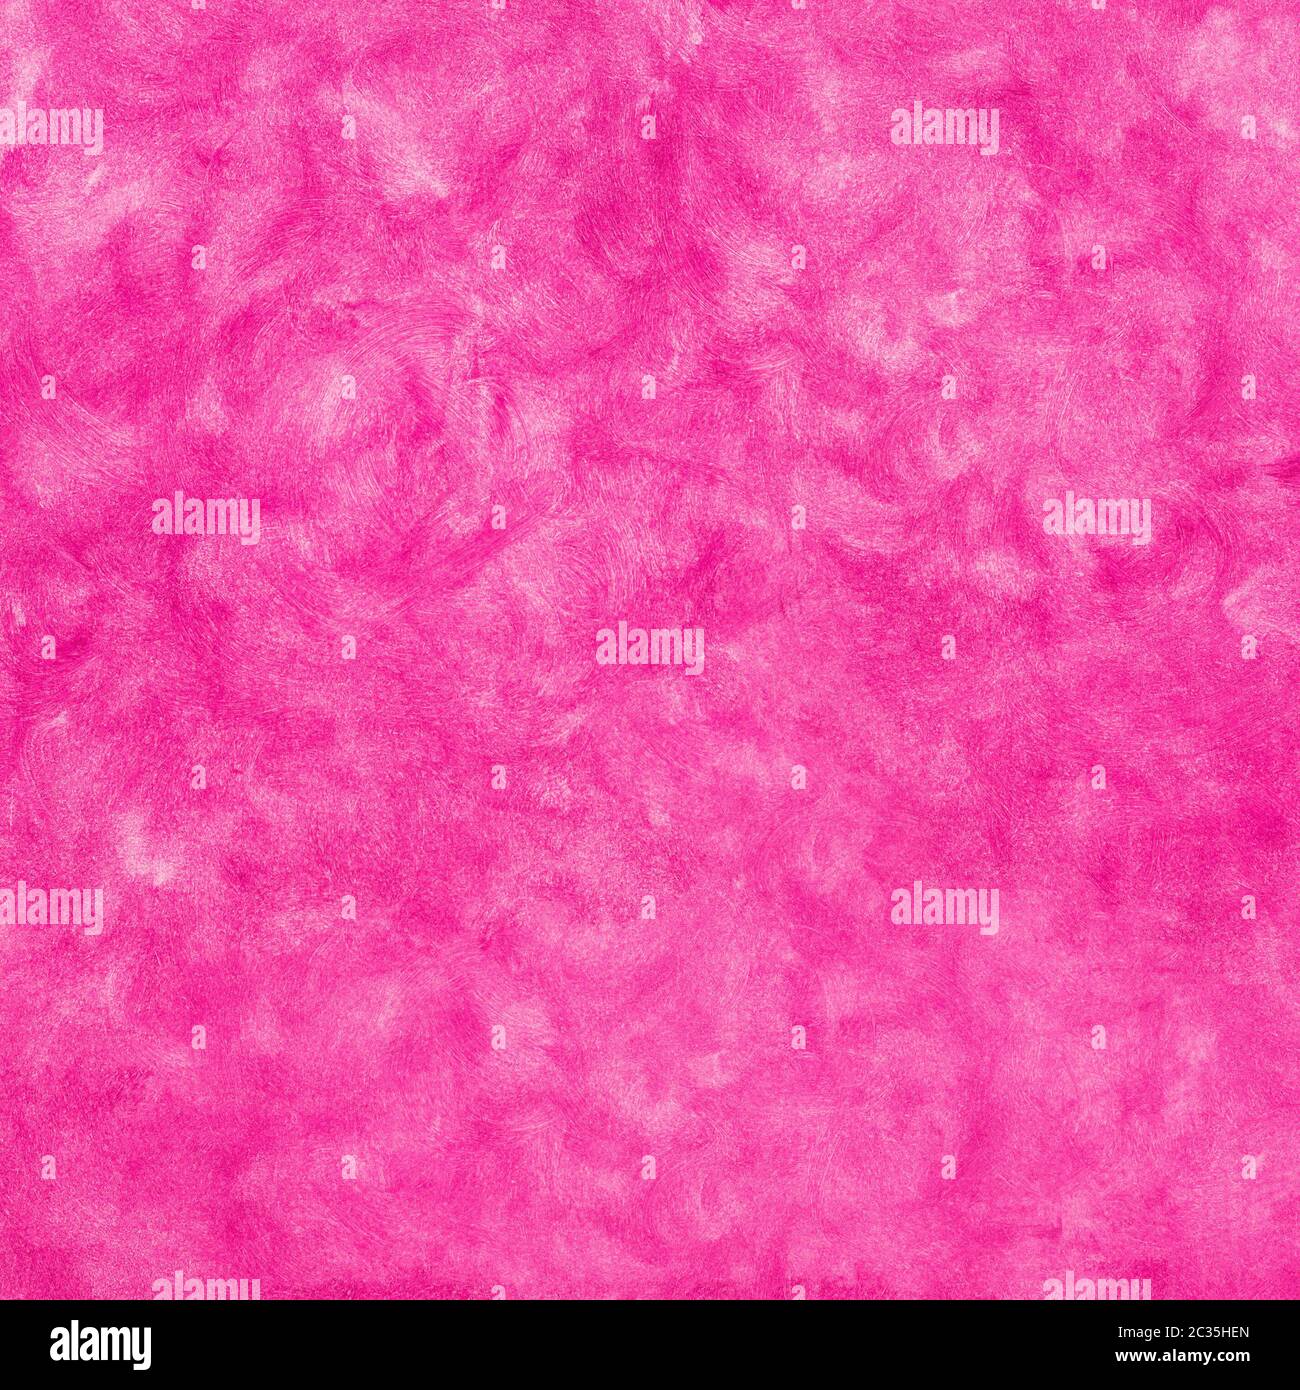 Parete Elegante in rosa e colore fucsia Foto Stock